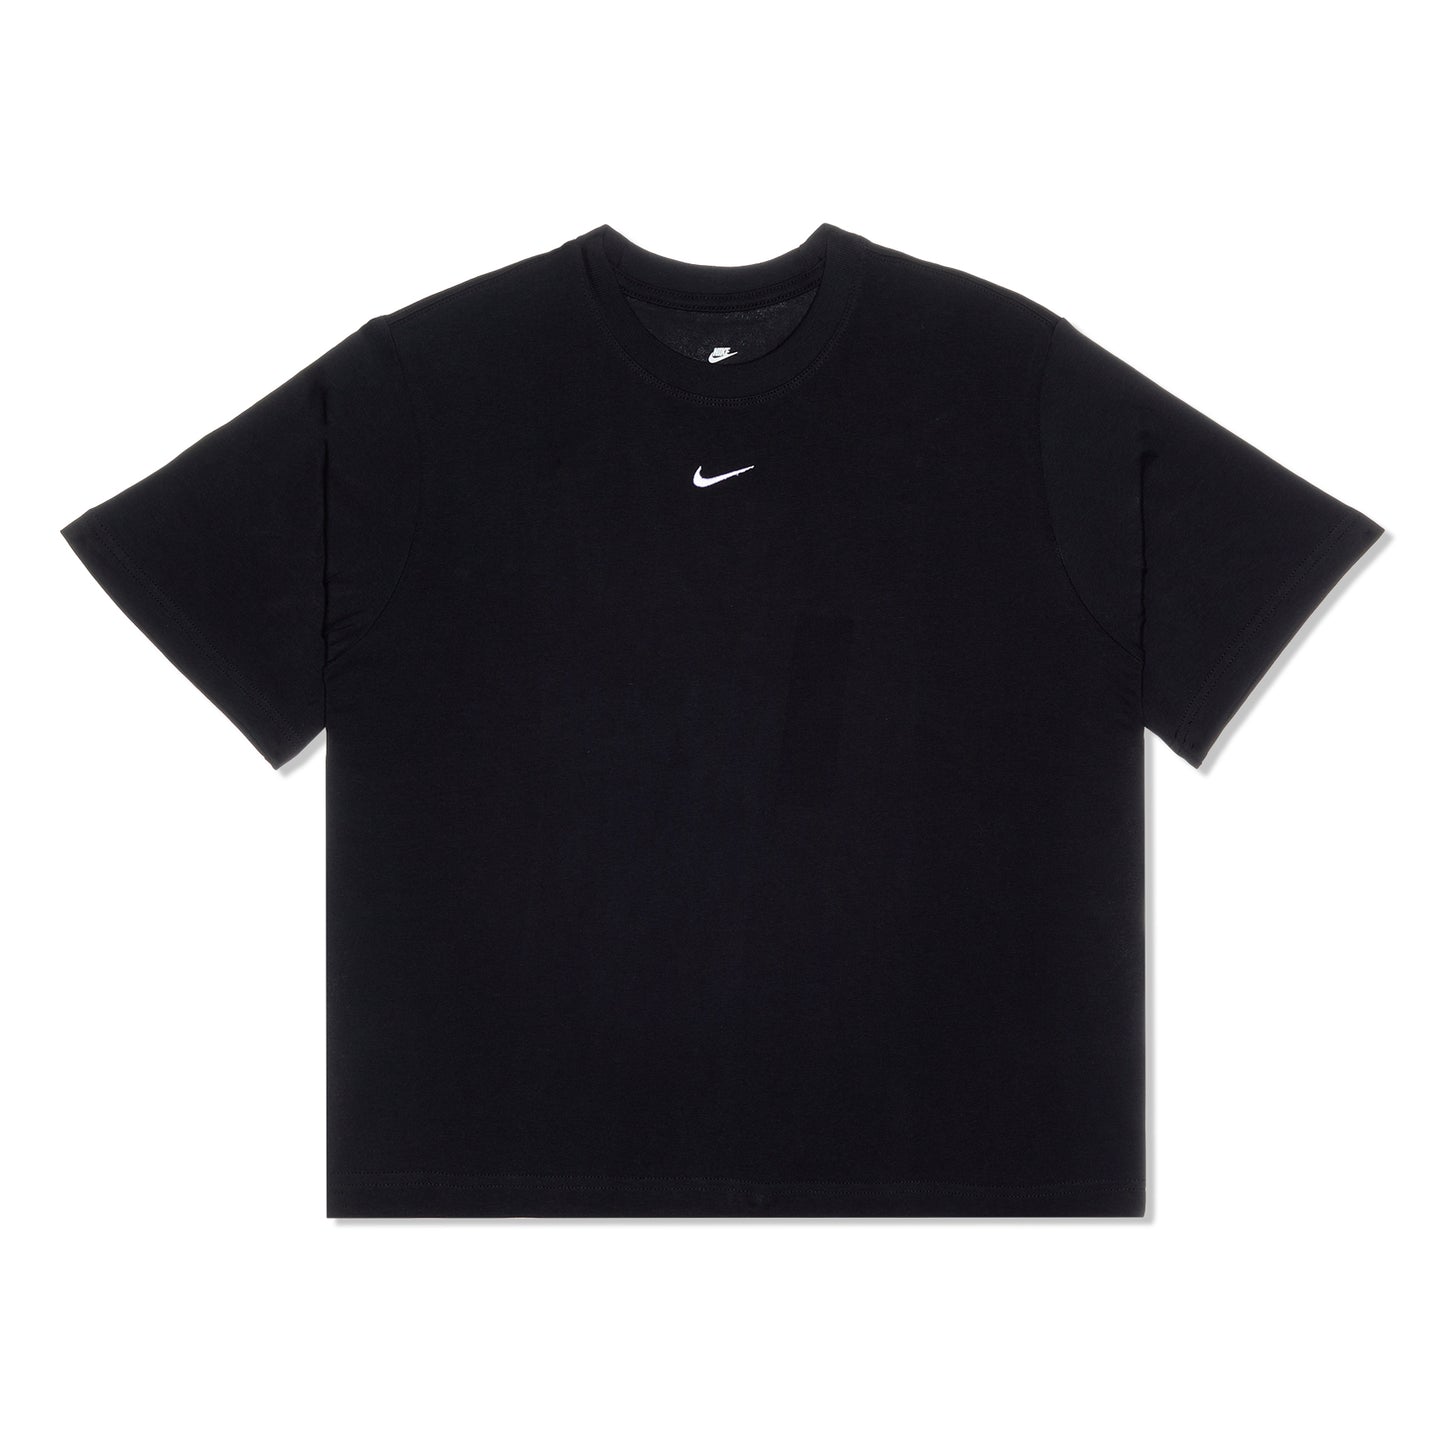 Die Preise fallen nach und nach! Nike Womens Sportswear T-Shirt – Essential Concepts (Black)